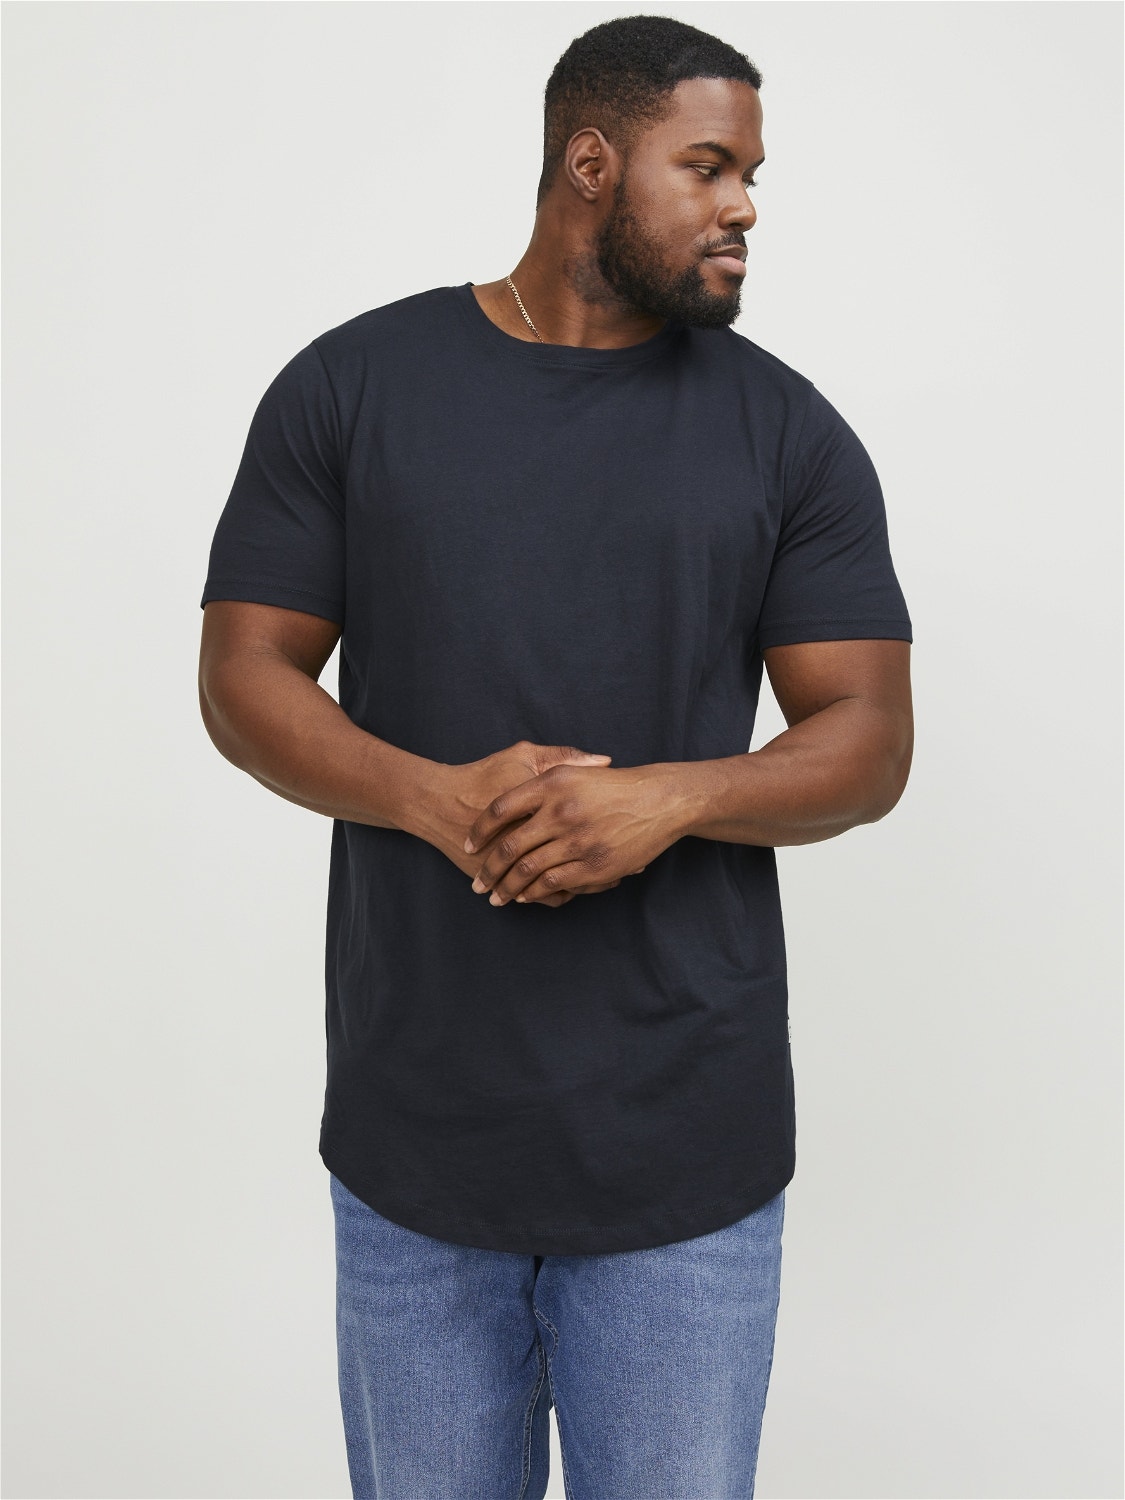 Jack & Jones Essentials Scoop Neck Longline T-shirt in Black for